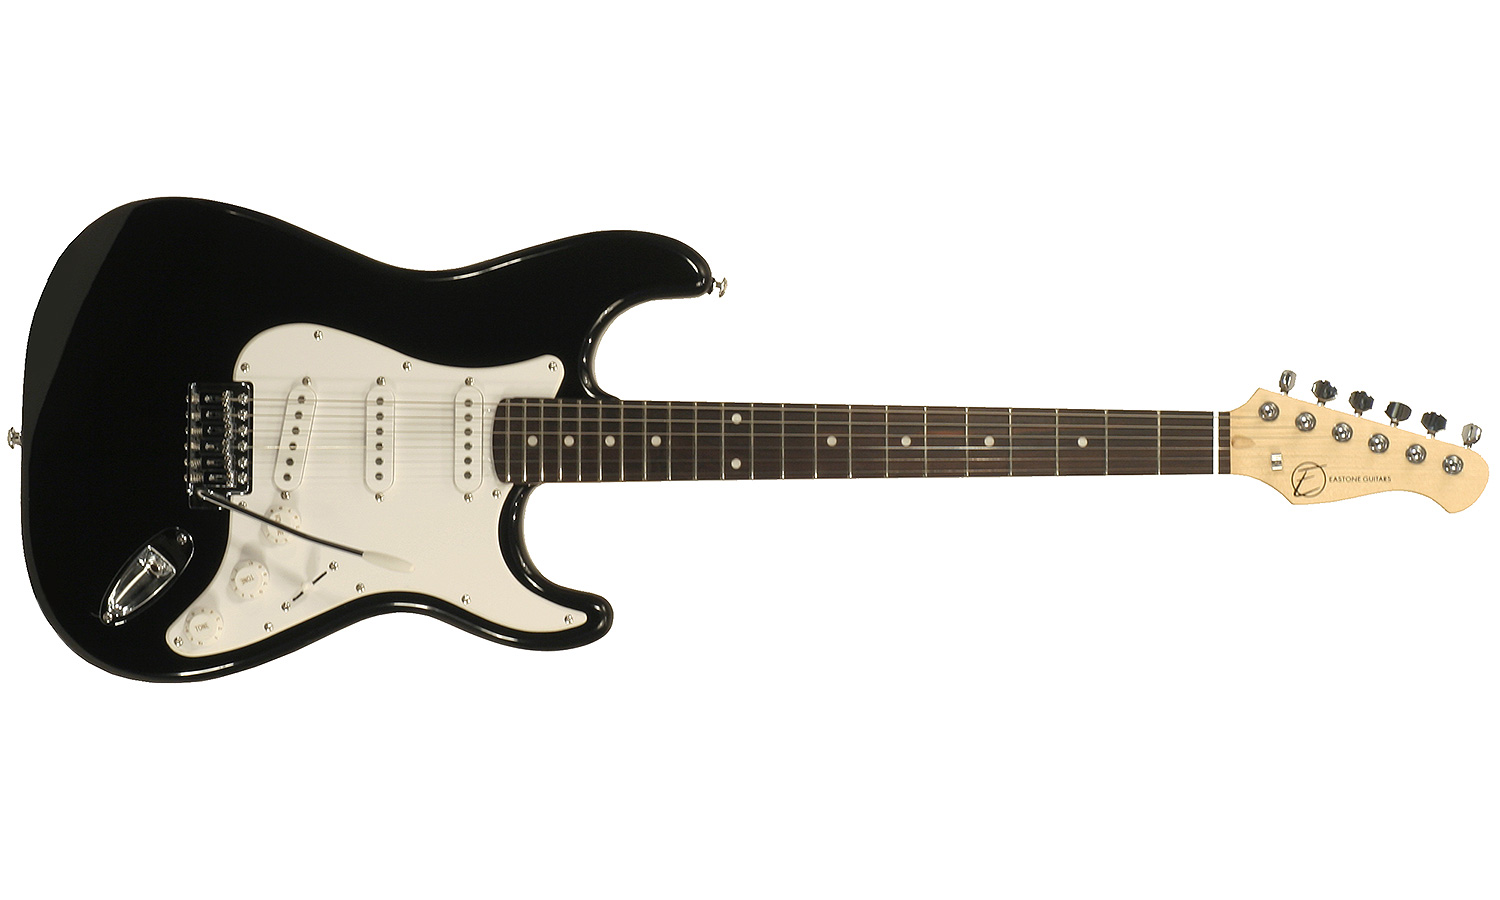 Eastone Str70-blk 3s Pur - Black - Guitarra eléctrica con forma de str. - Variation 1